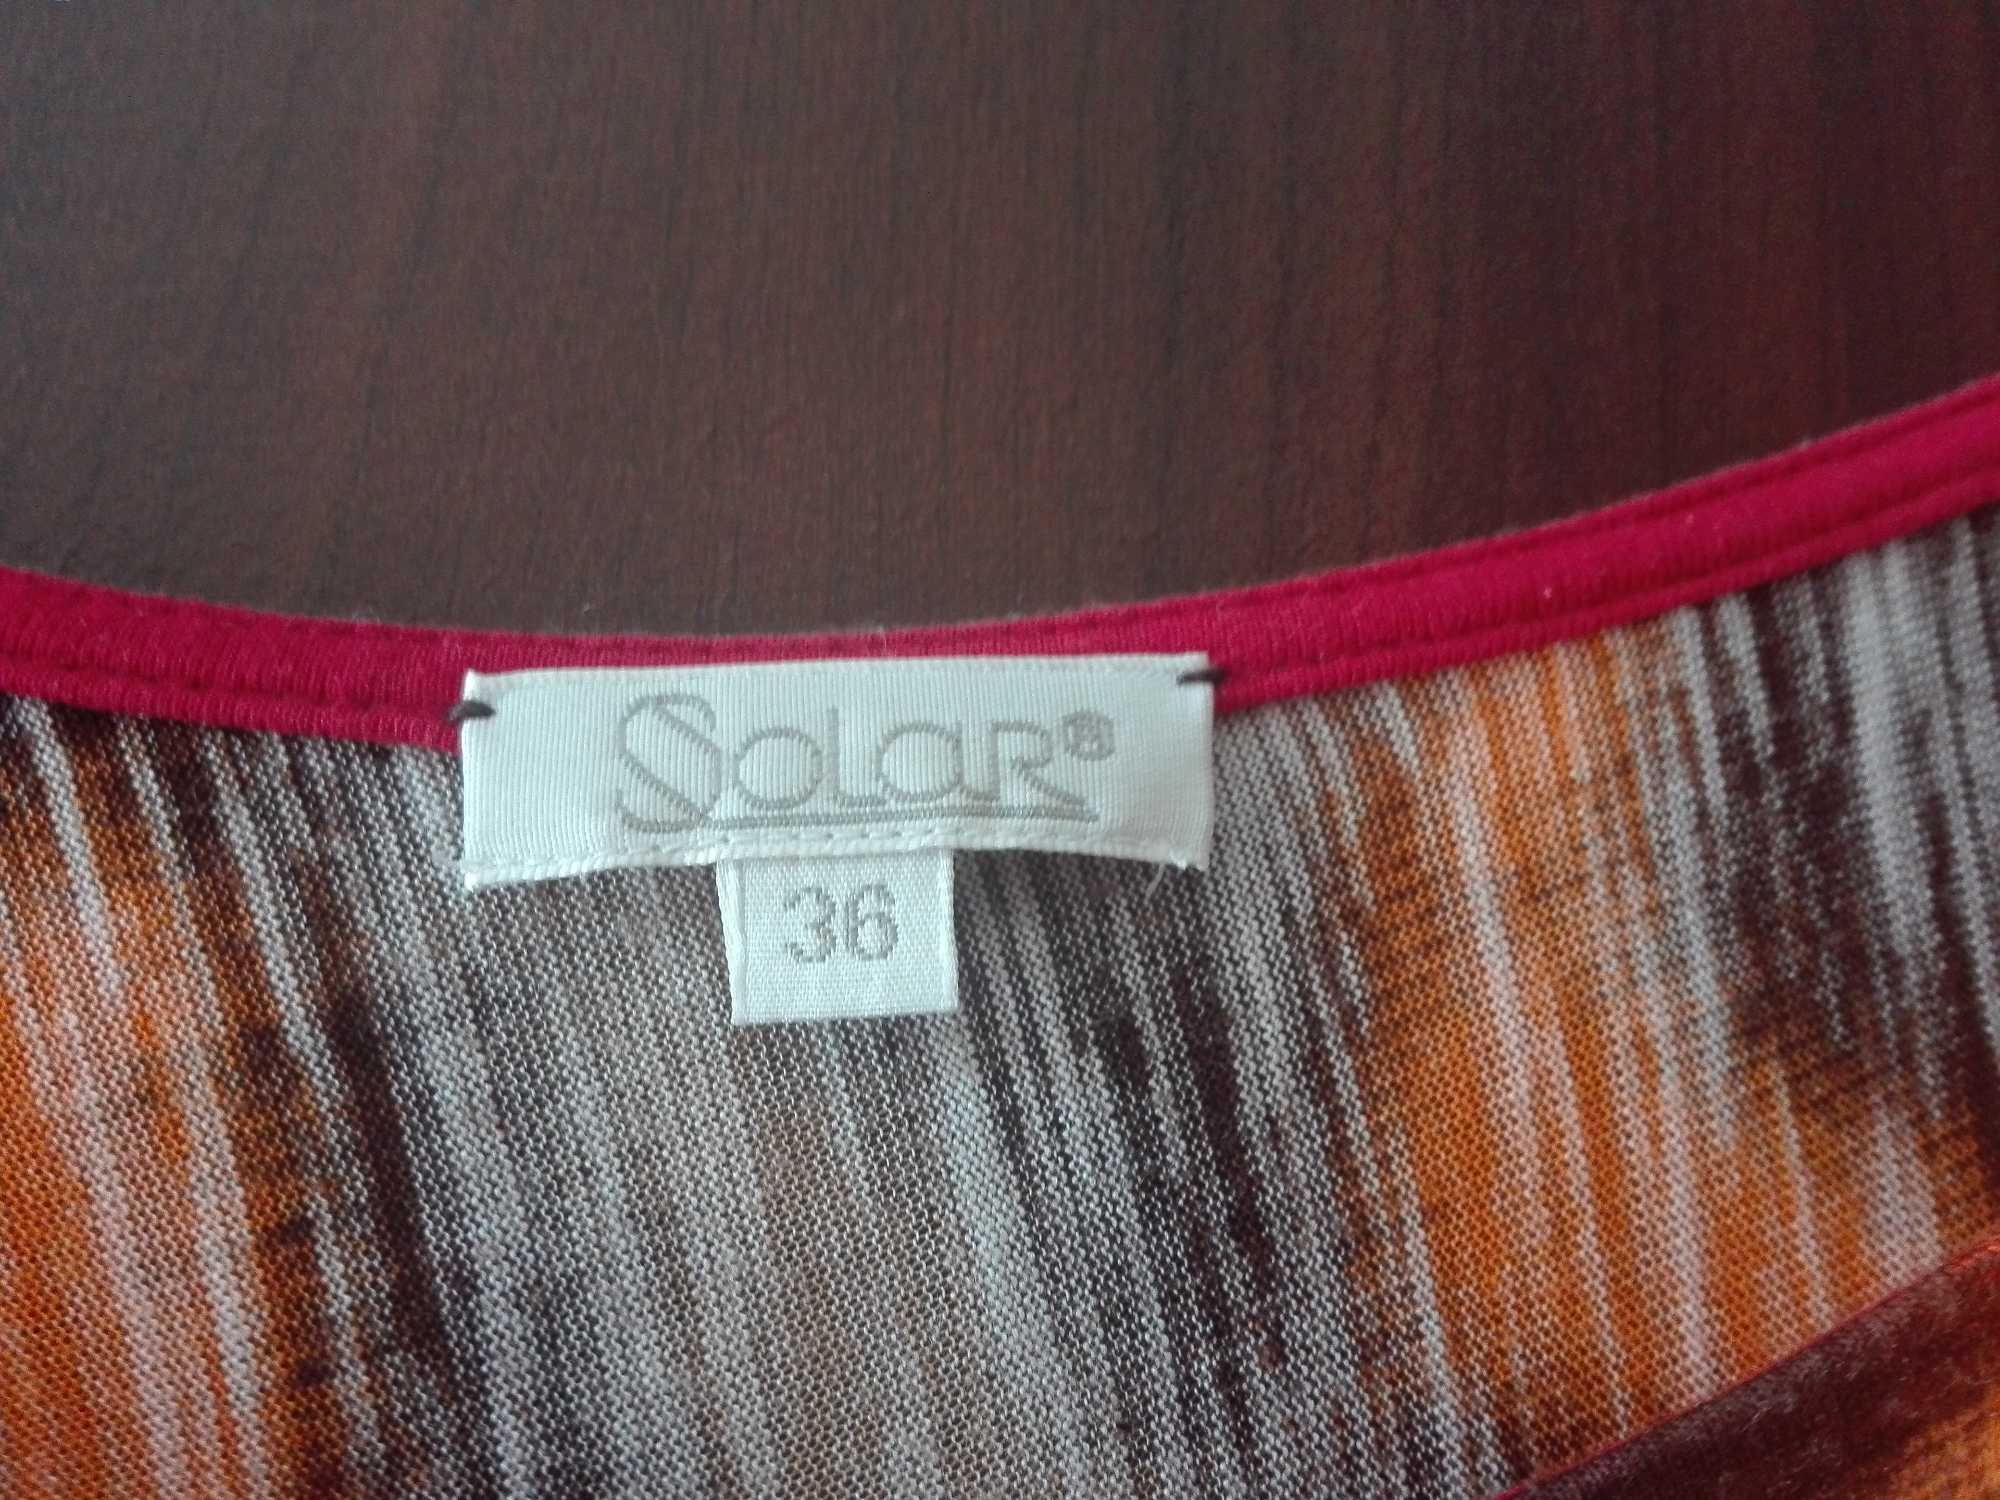 Kolorowa bluzka Solar rozm. 36